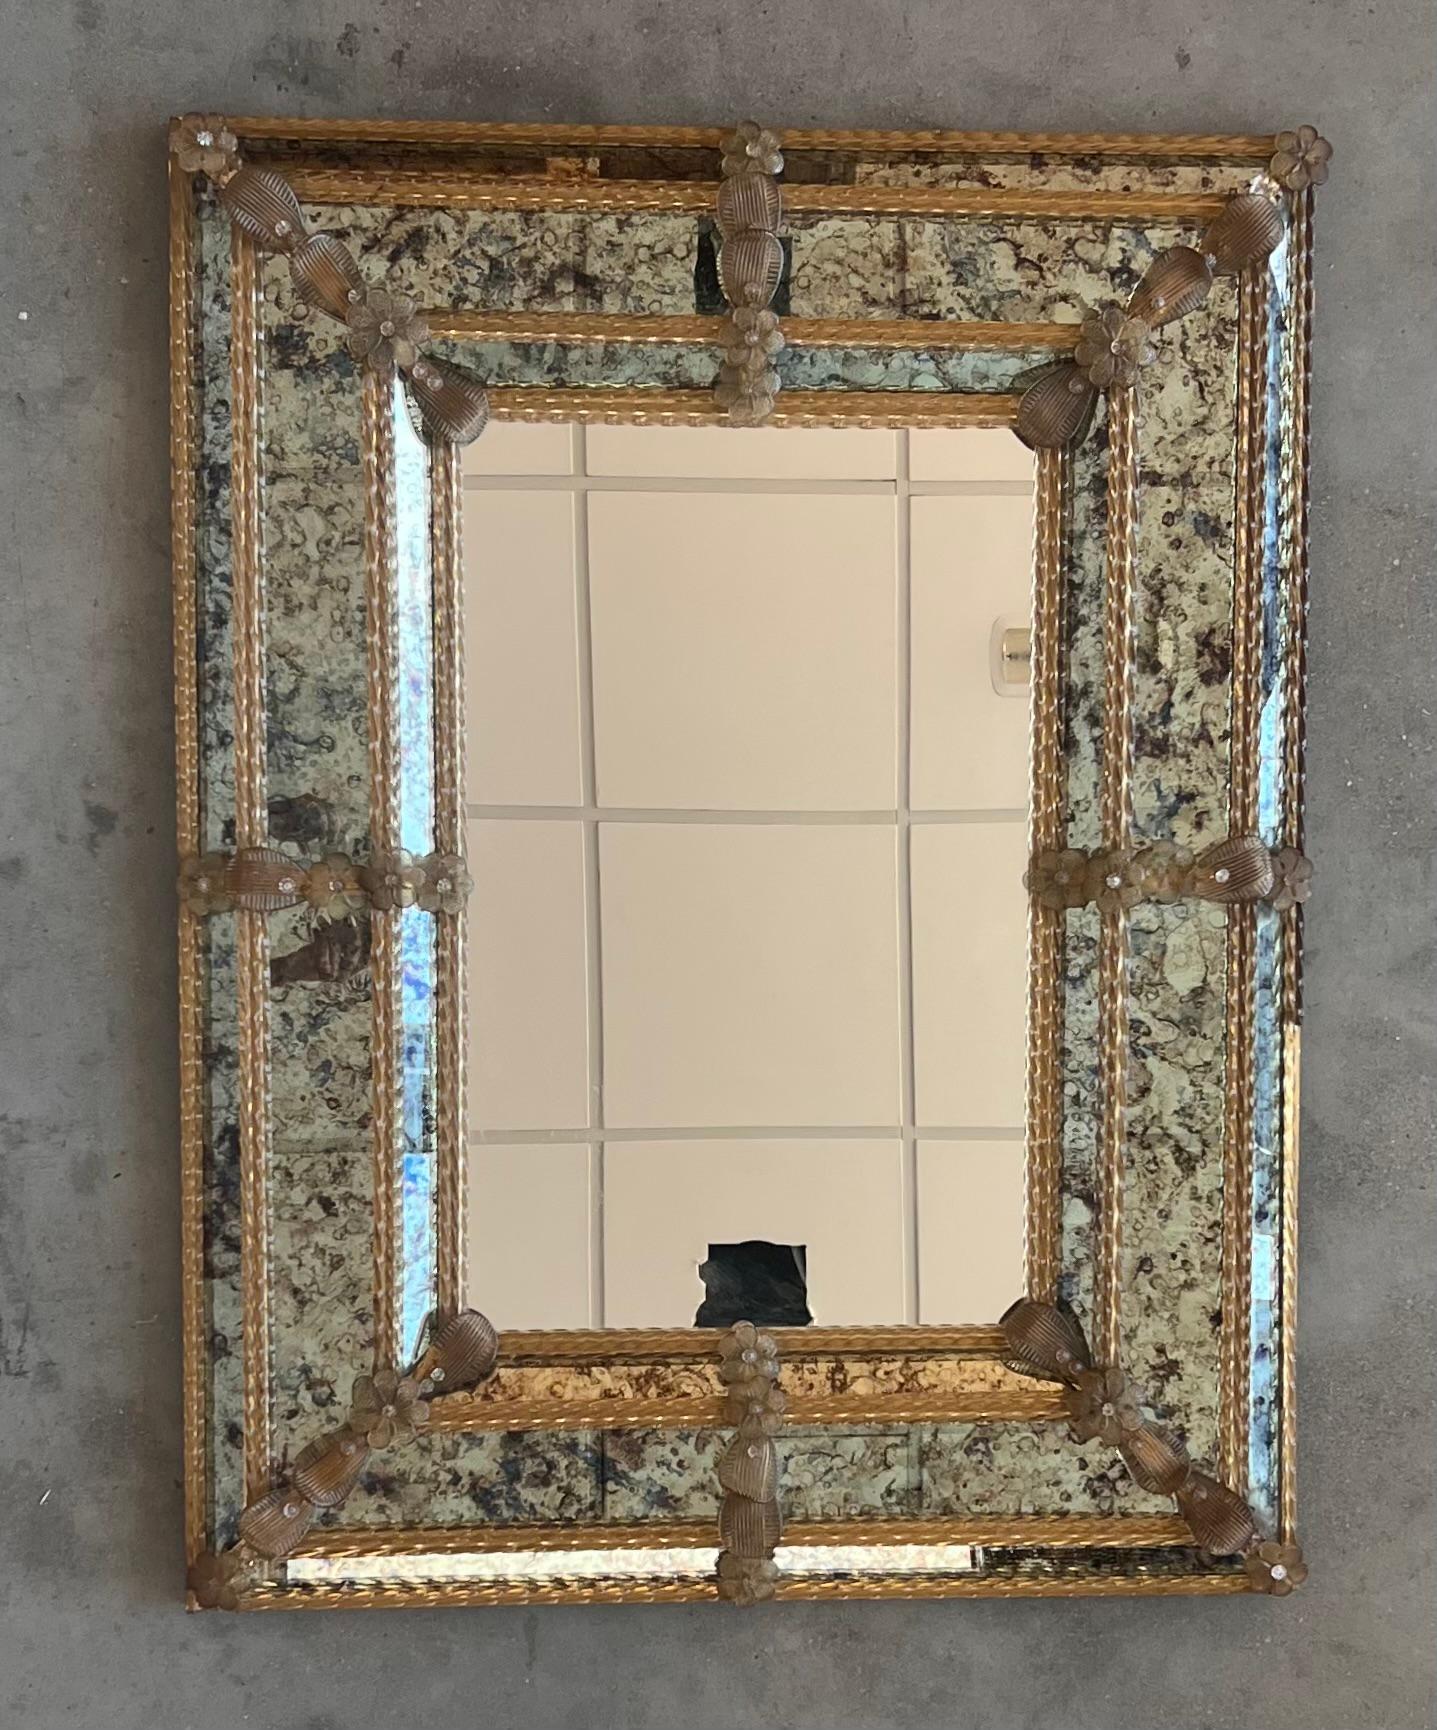 Der quadratische venezianische Spiegel hat abgeschrägte Paneele und geschnitzte Reliefs, die  Der Spiegel wurde handgefertigt und von Hand versilbert. Die mittlere Platte weist eine leichte Antikisierung auf, während die Einfassung eine stärkere